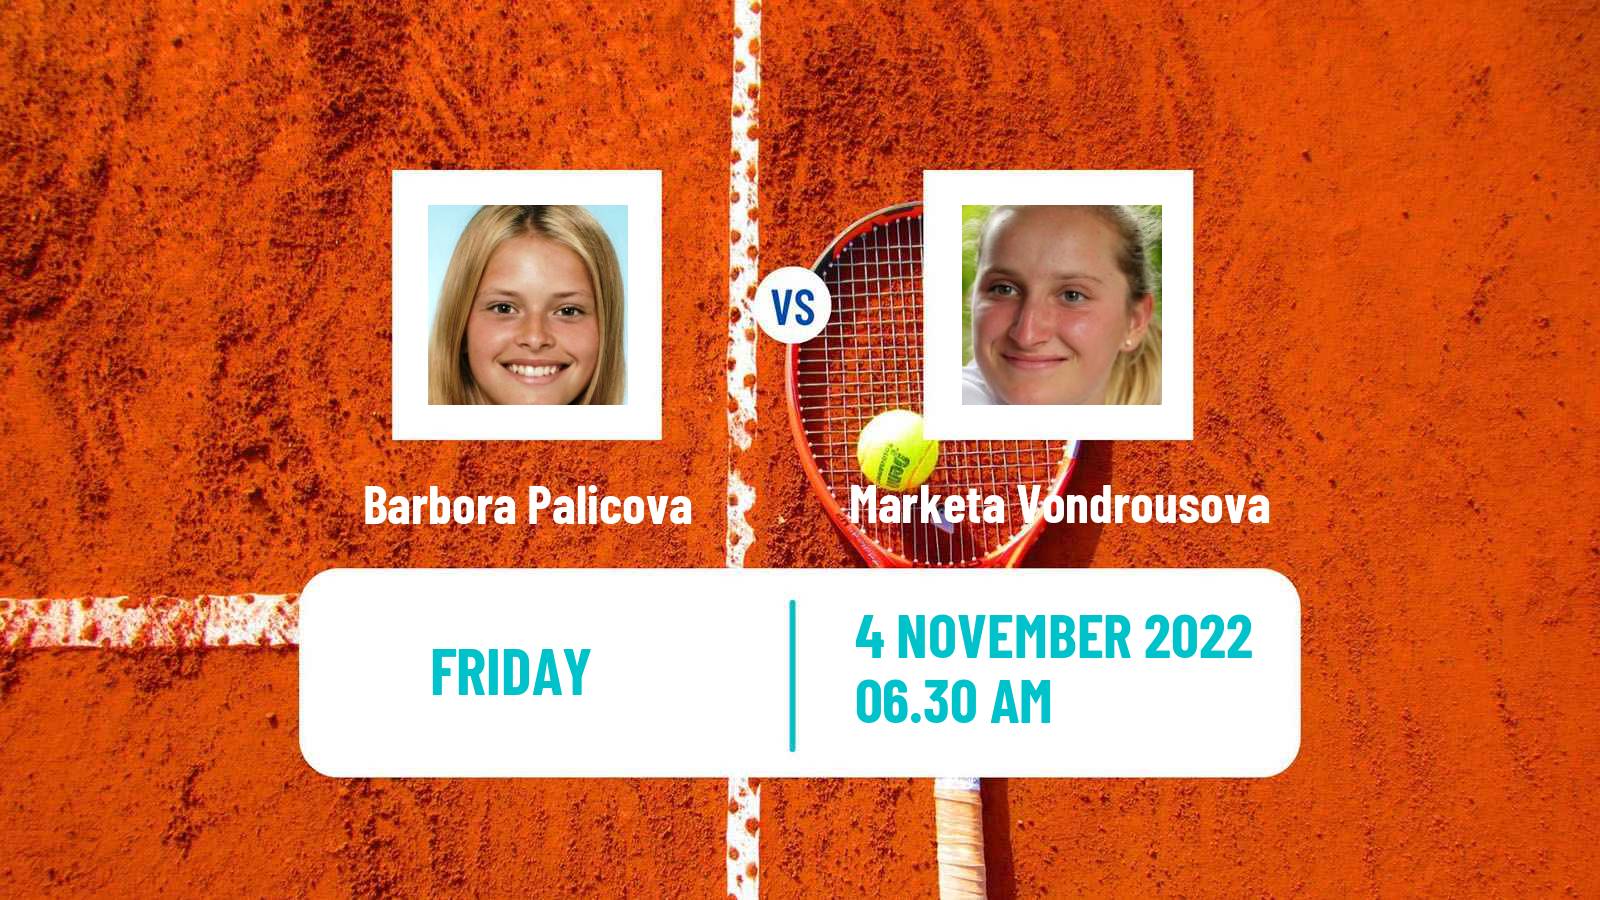 Tennis ITF Tournaments Barbora Palicova - Marketa Vondrousova